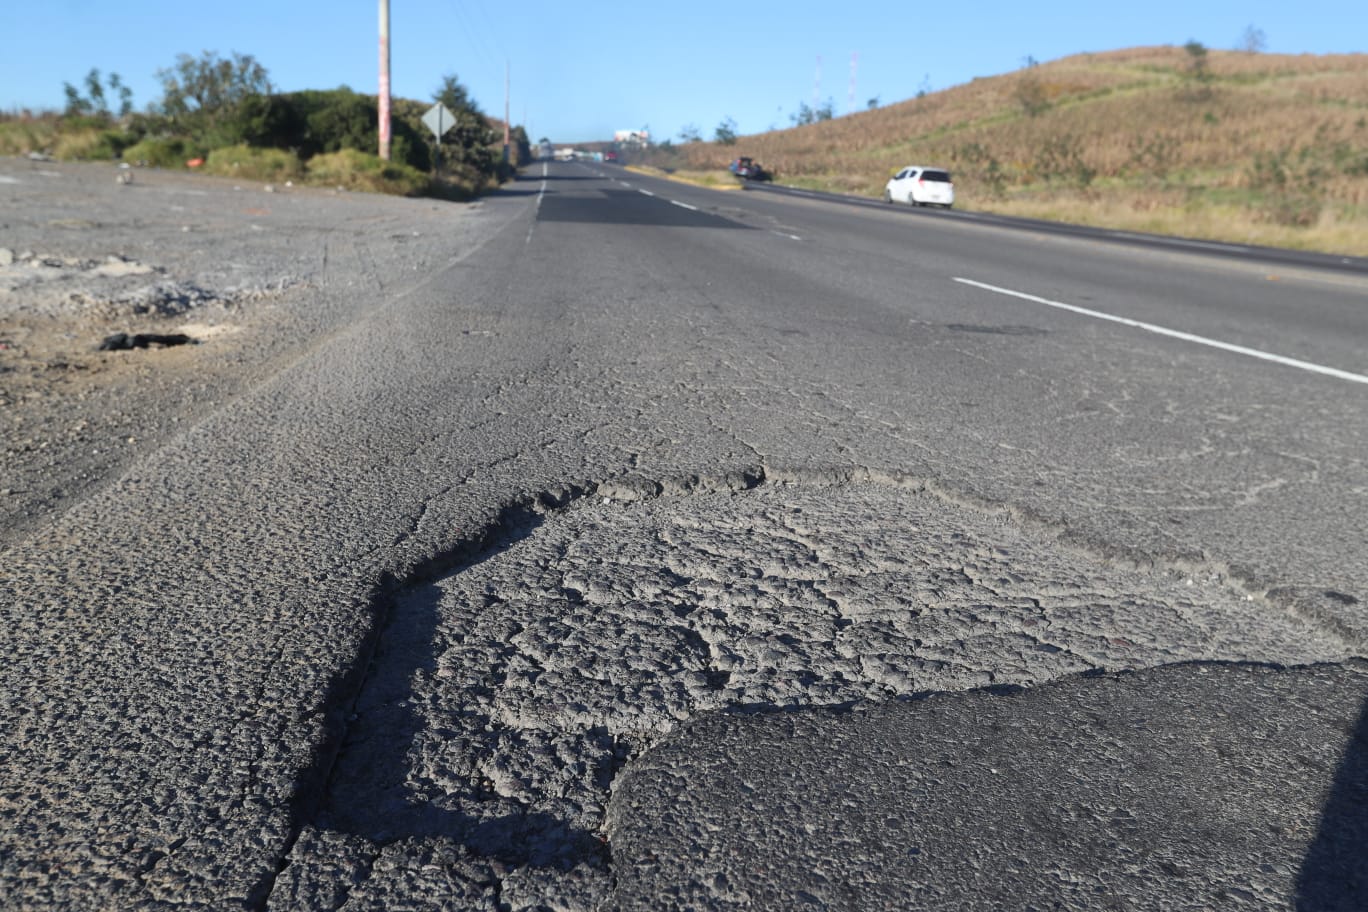 Los daños en la carretera ponen en riesgo a viajeros. (Foto Prensa Libre: Andrea Domínguez)